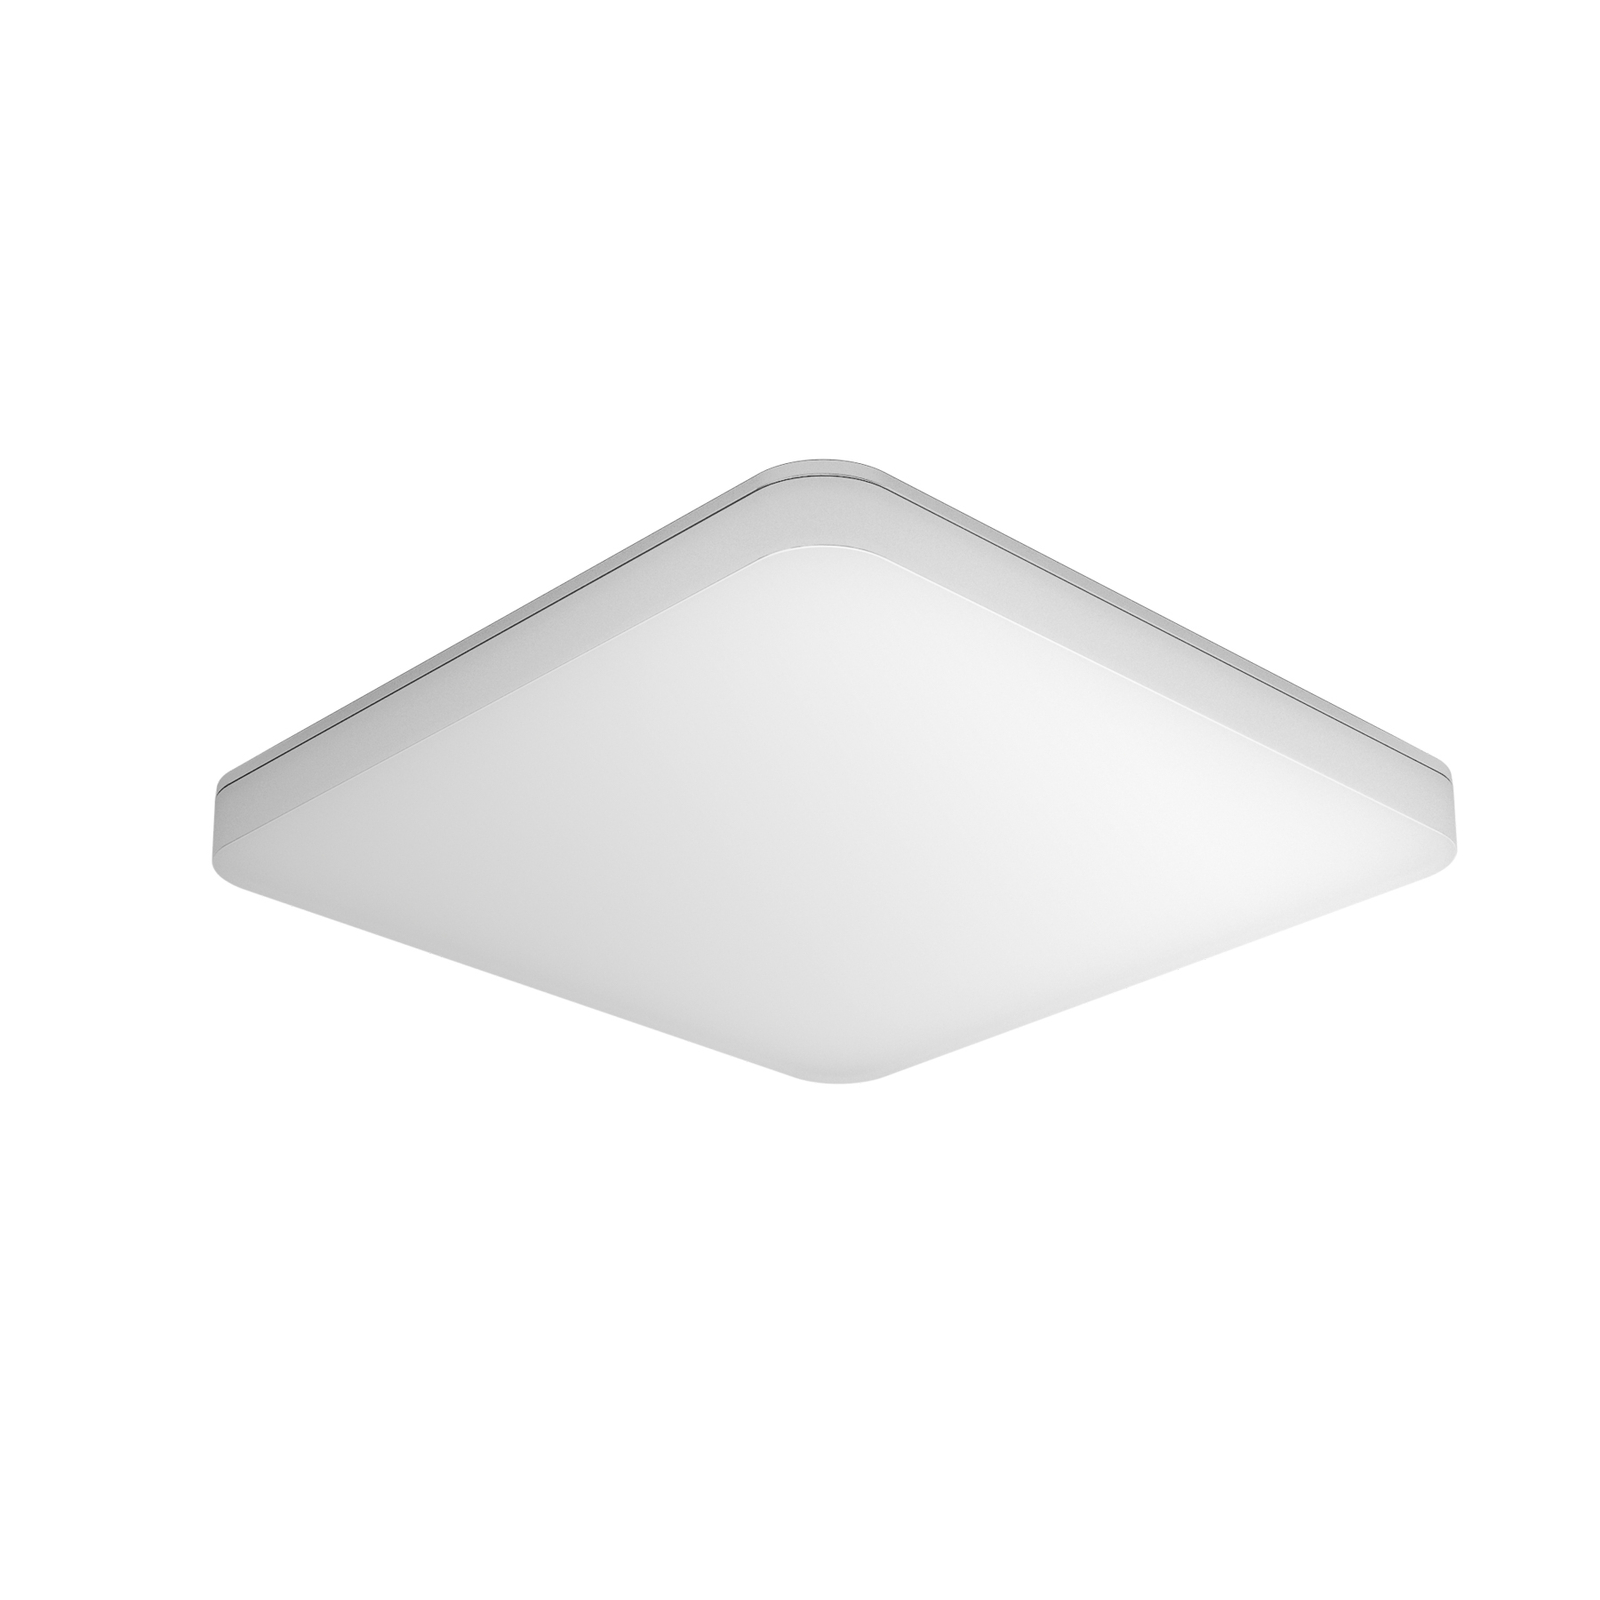 STEINEL RS PRO R20 Q basic LED ceiling lamp 4,000K